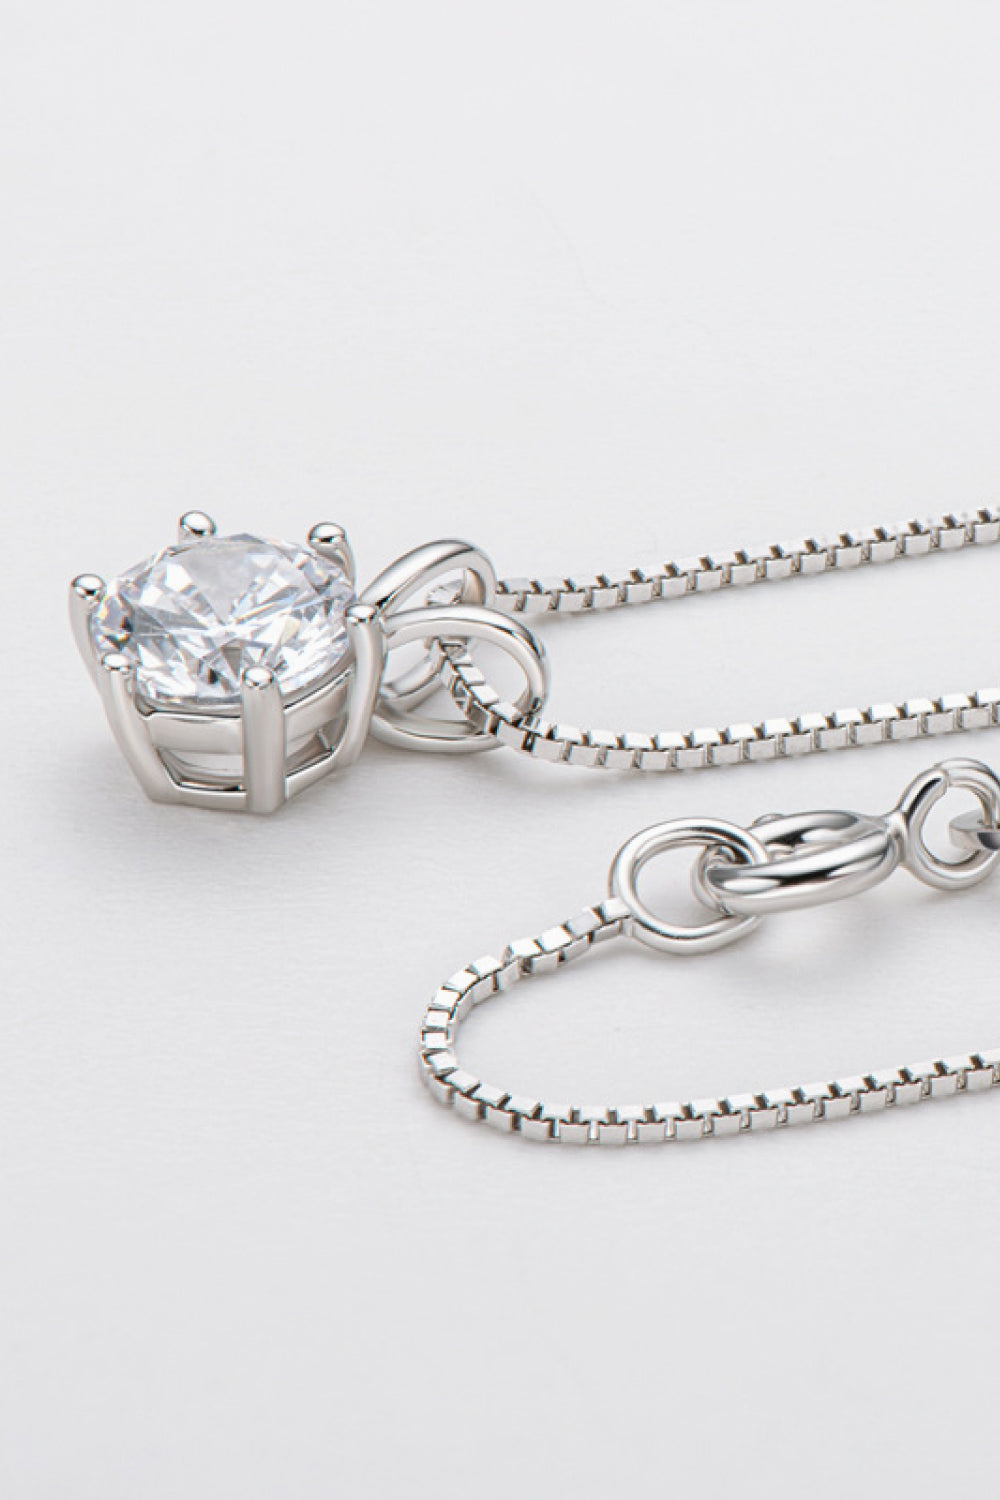 925 Sterling Silver 1 Carat Moissanite Pendant Necklace - DromedarShop.com Online Boutique